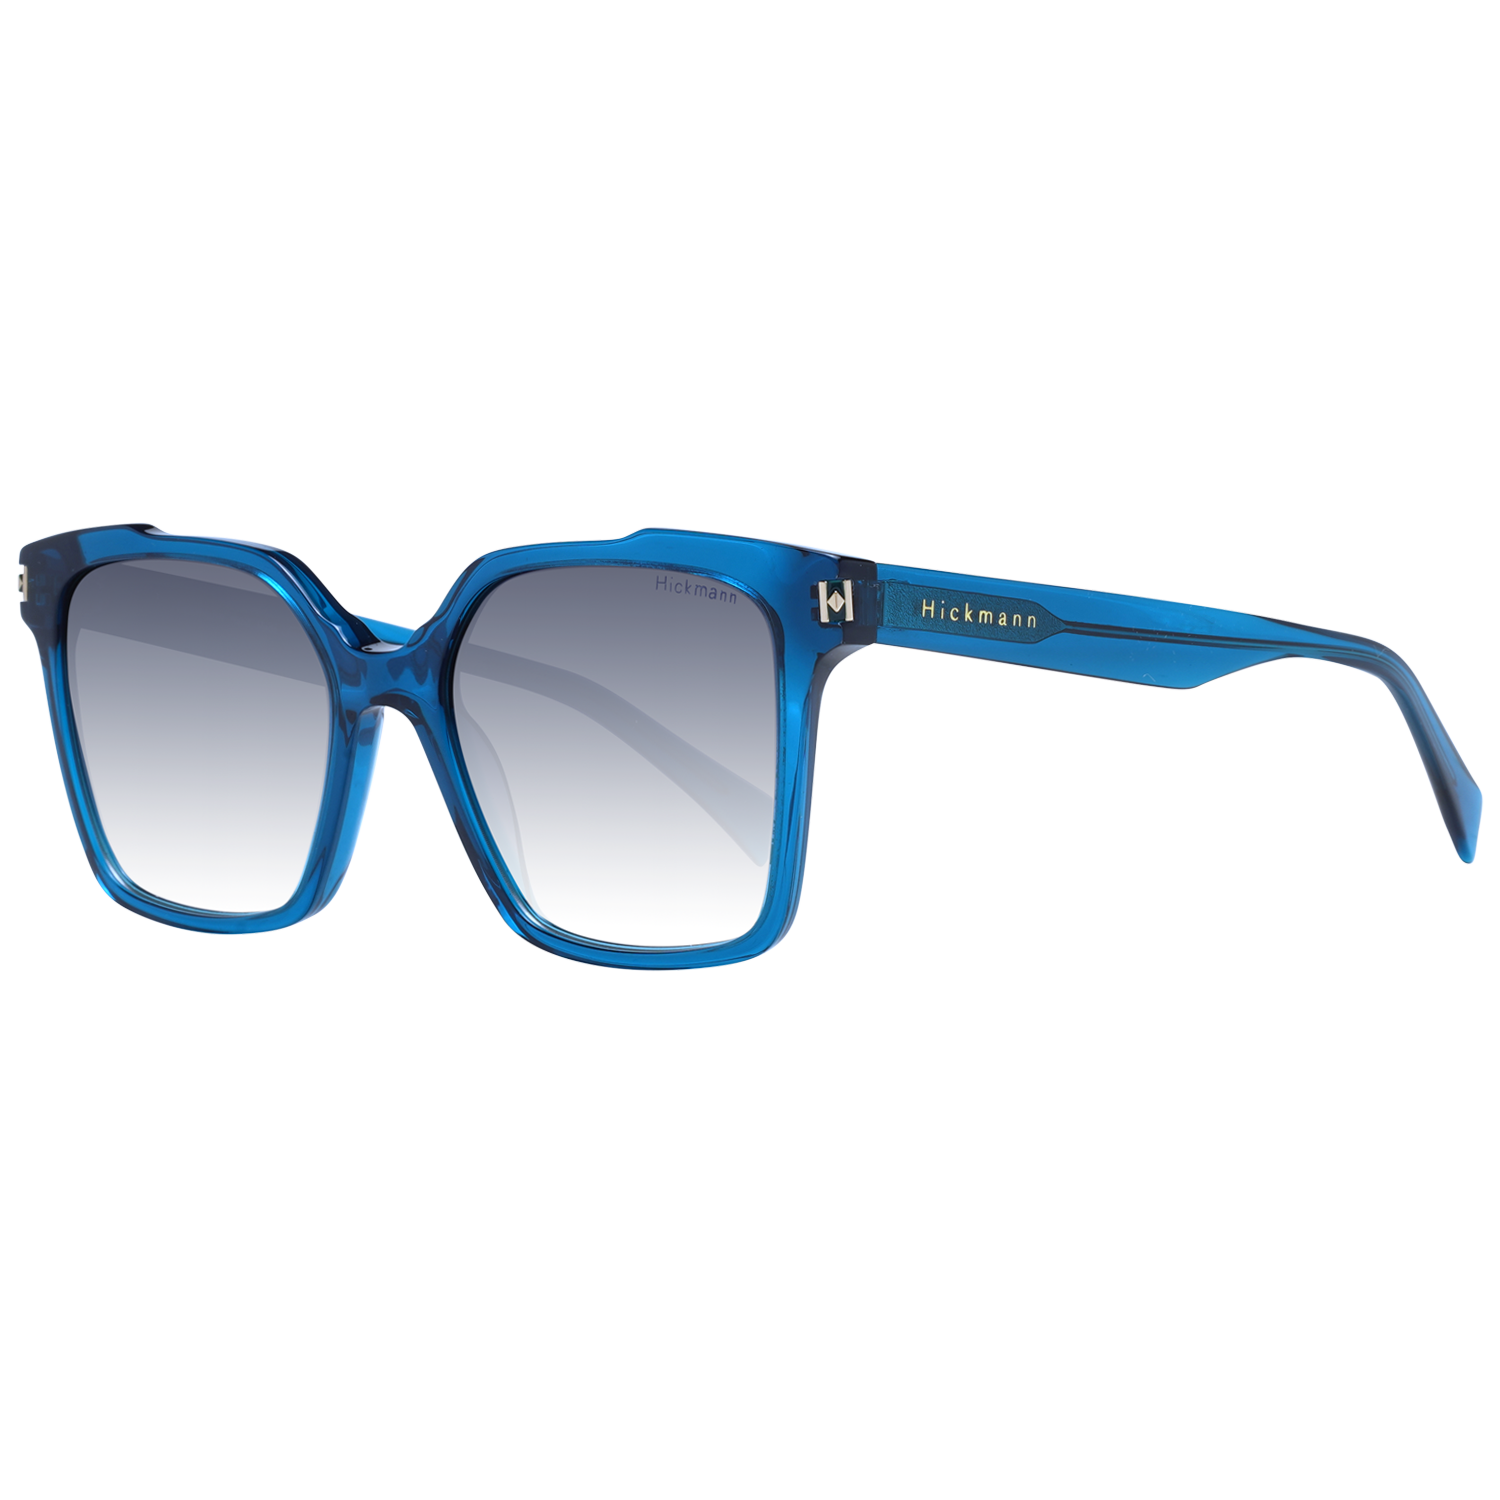 Dámské sluneční brýle Ana Hickmann HI9170 T01 52